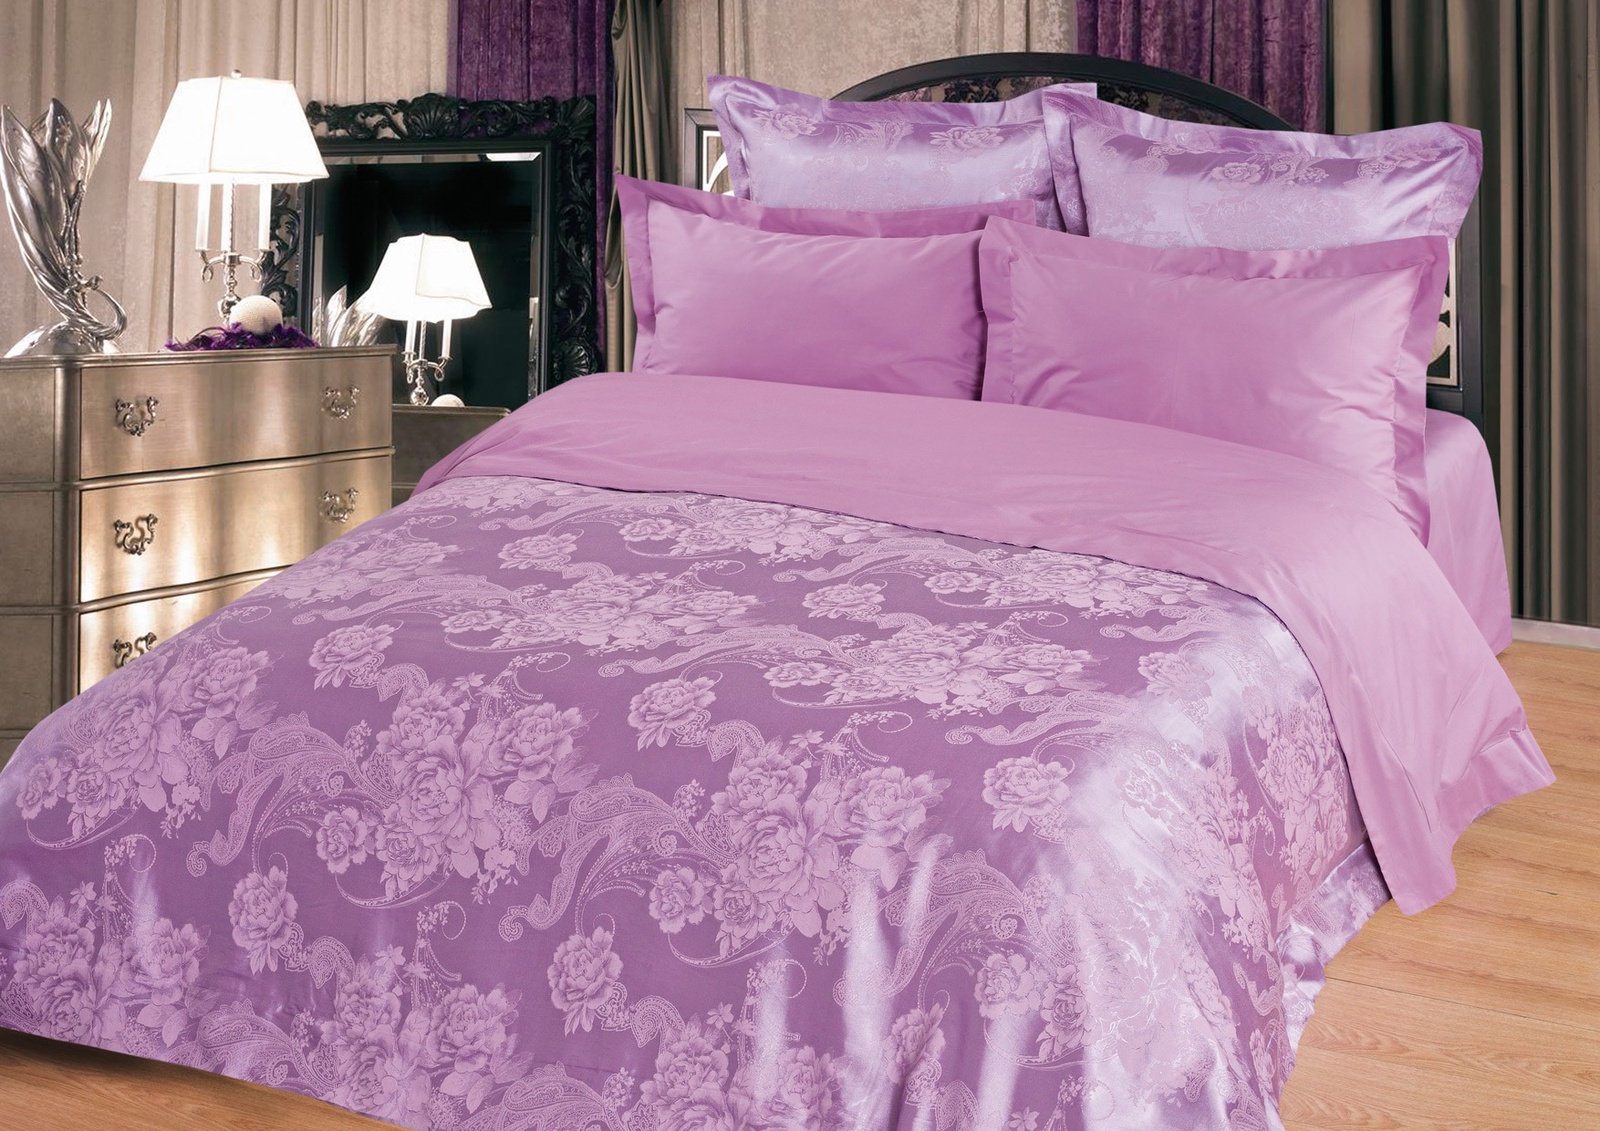 фото Комплект постельного белья  BegAl, ЖКЭ001-107, фиолетовый, 1.5 спальный